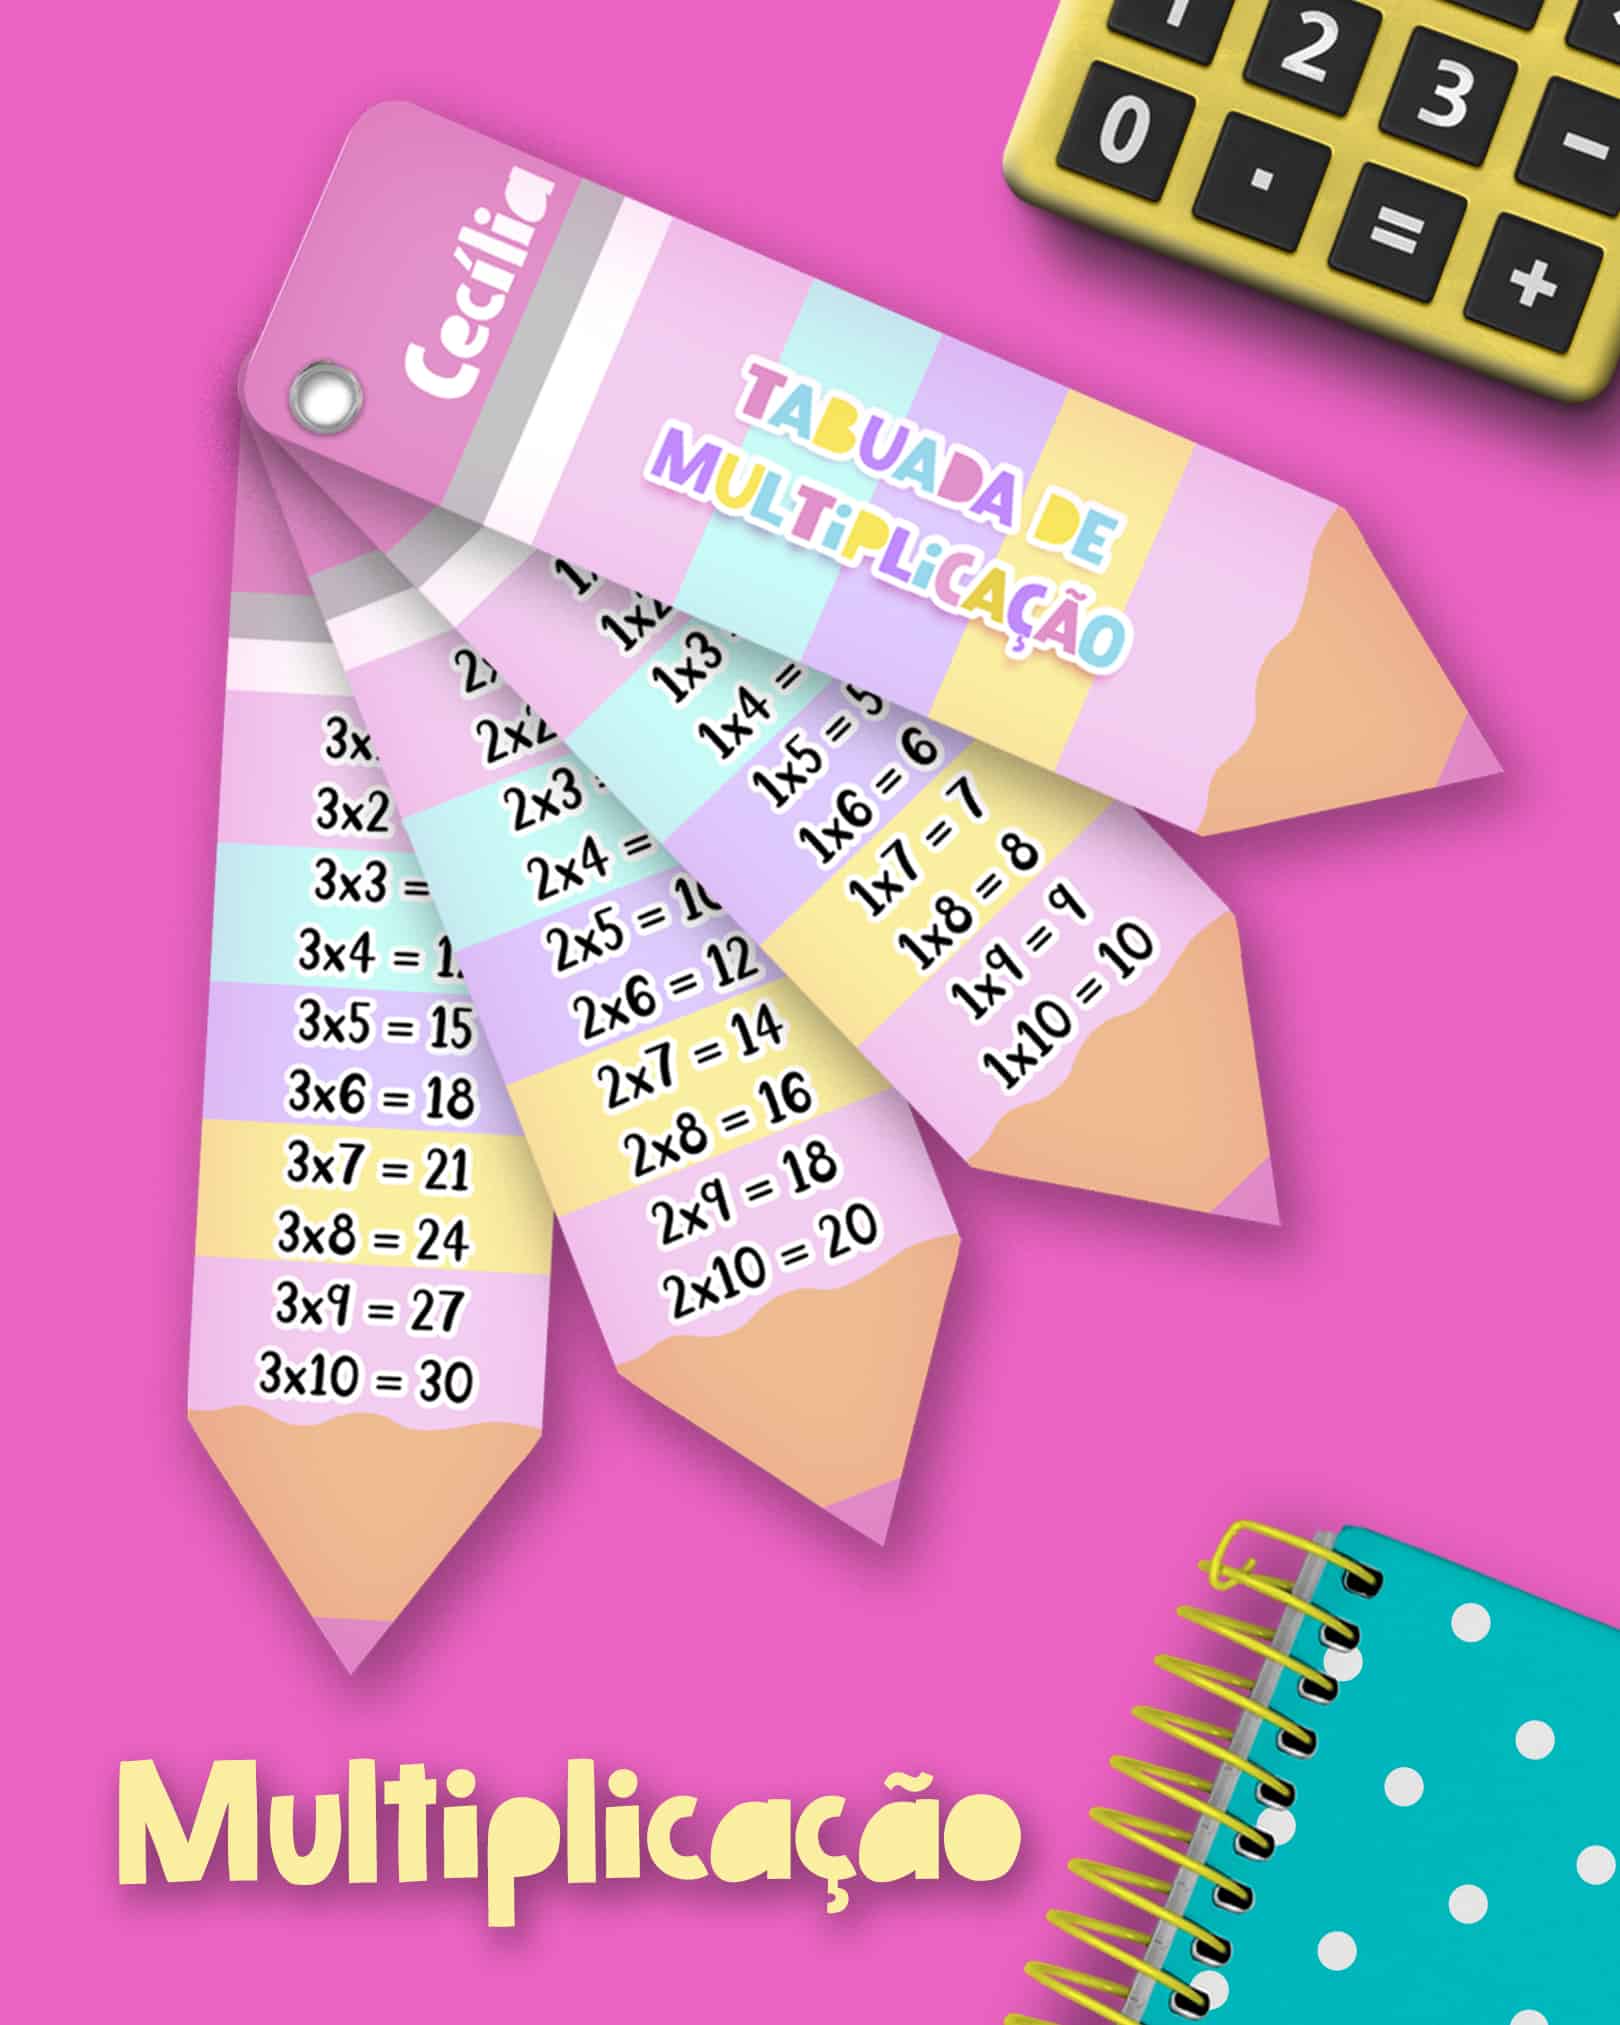 Tabuada Completa de multiplicação, adição, divisão e subtração